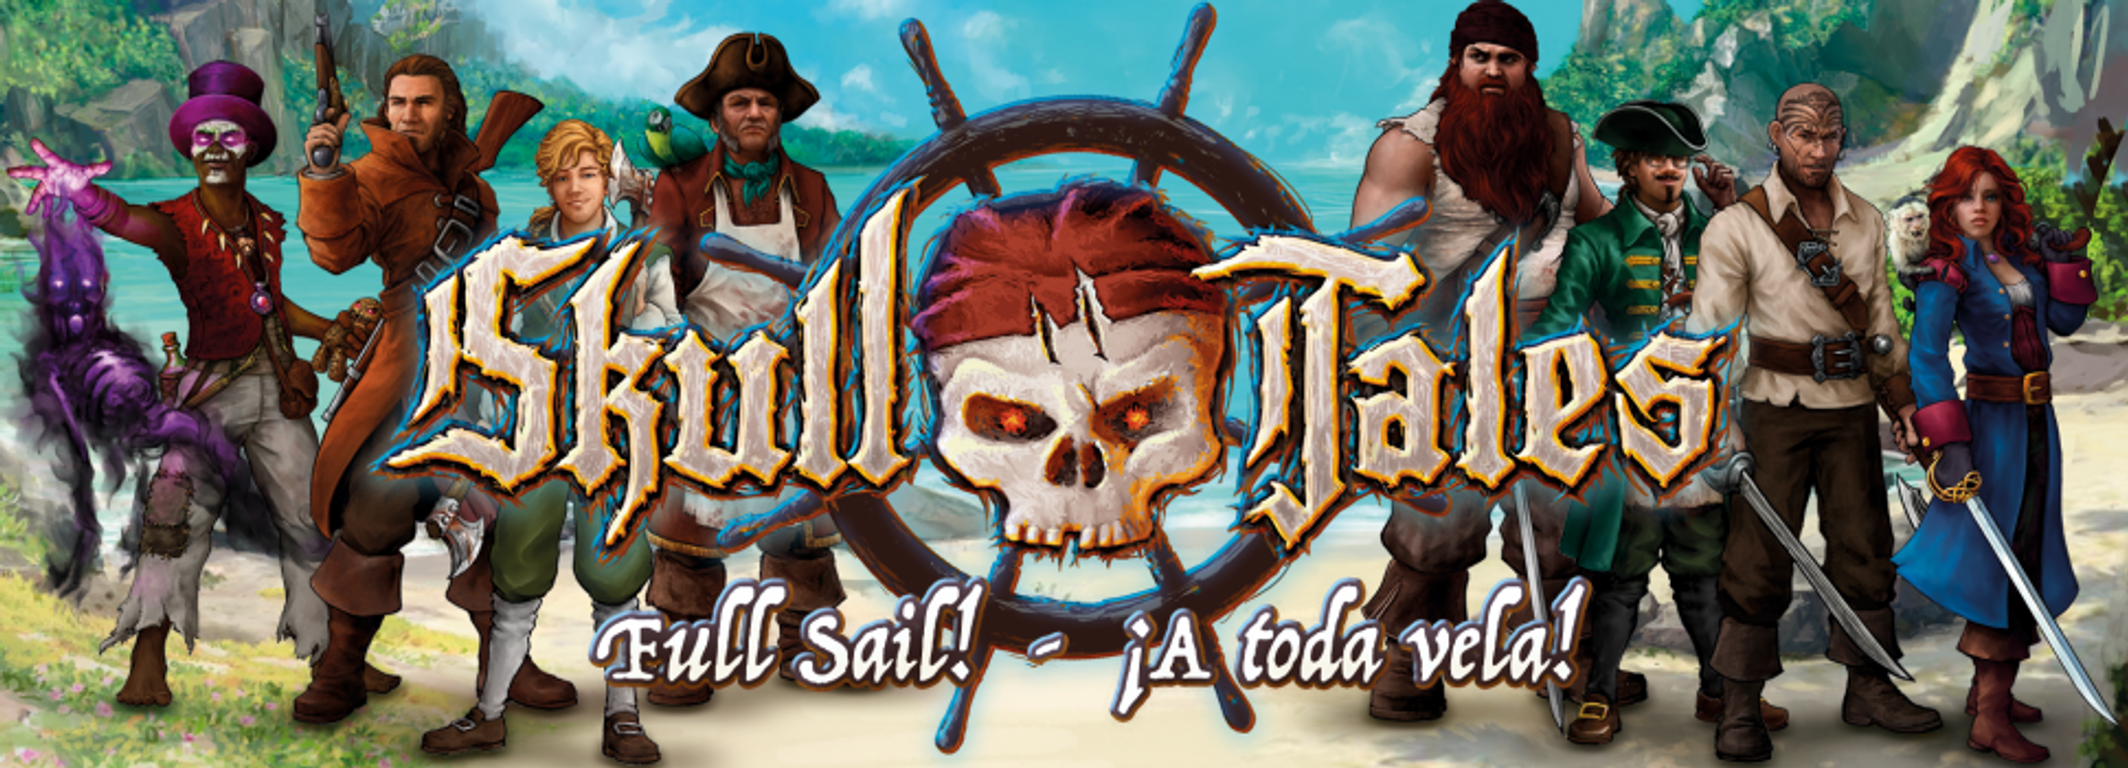 Skull Tales ¡A Toda Vela!: Mega-Expansión